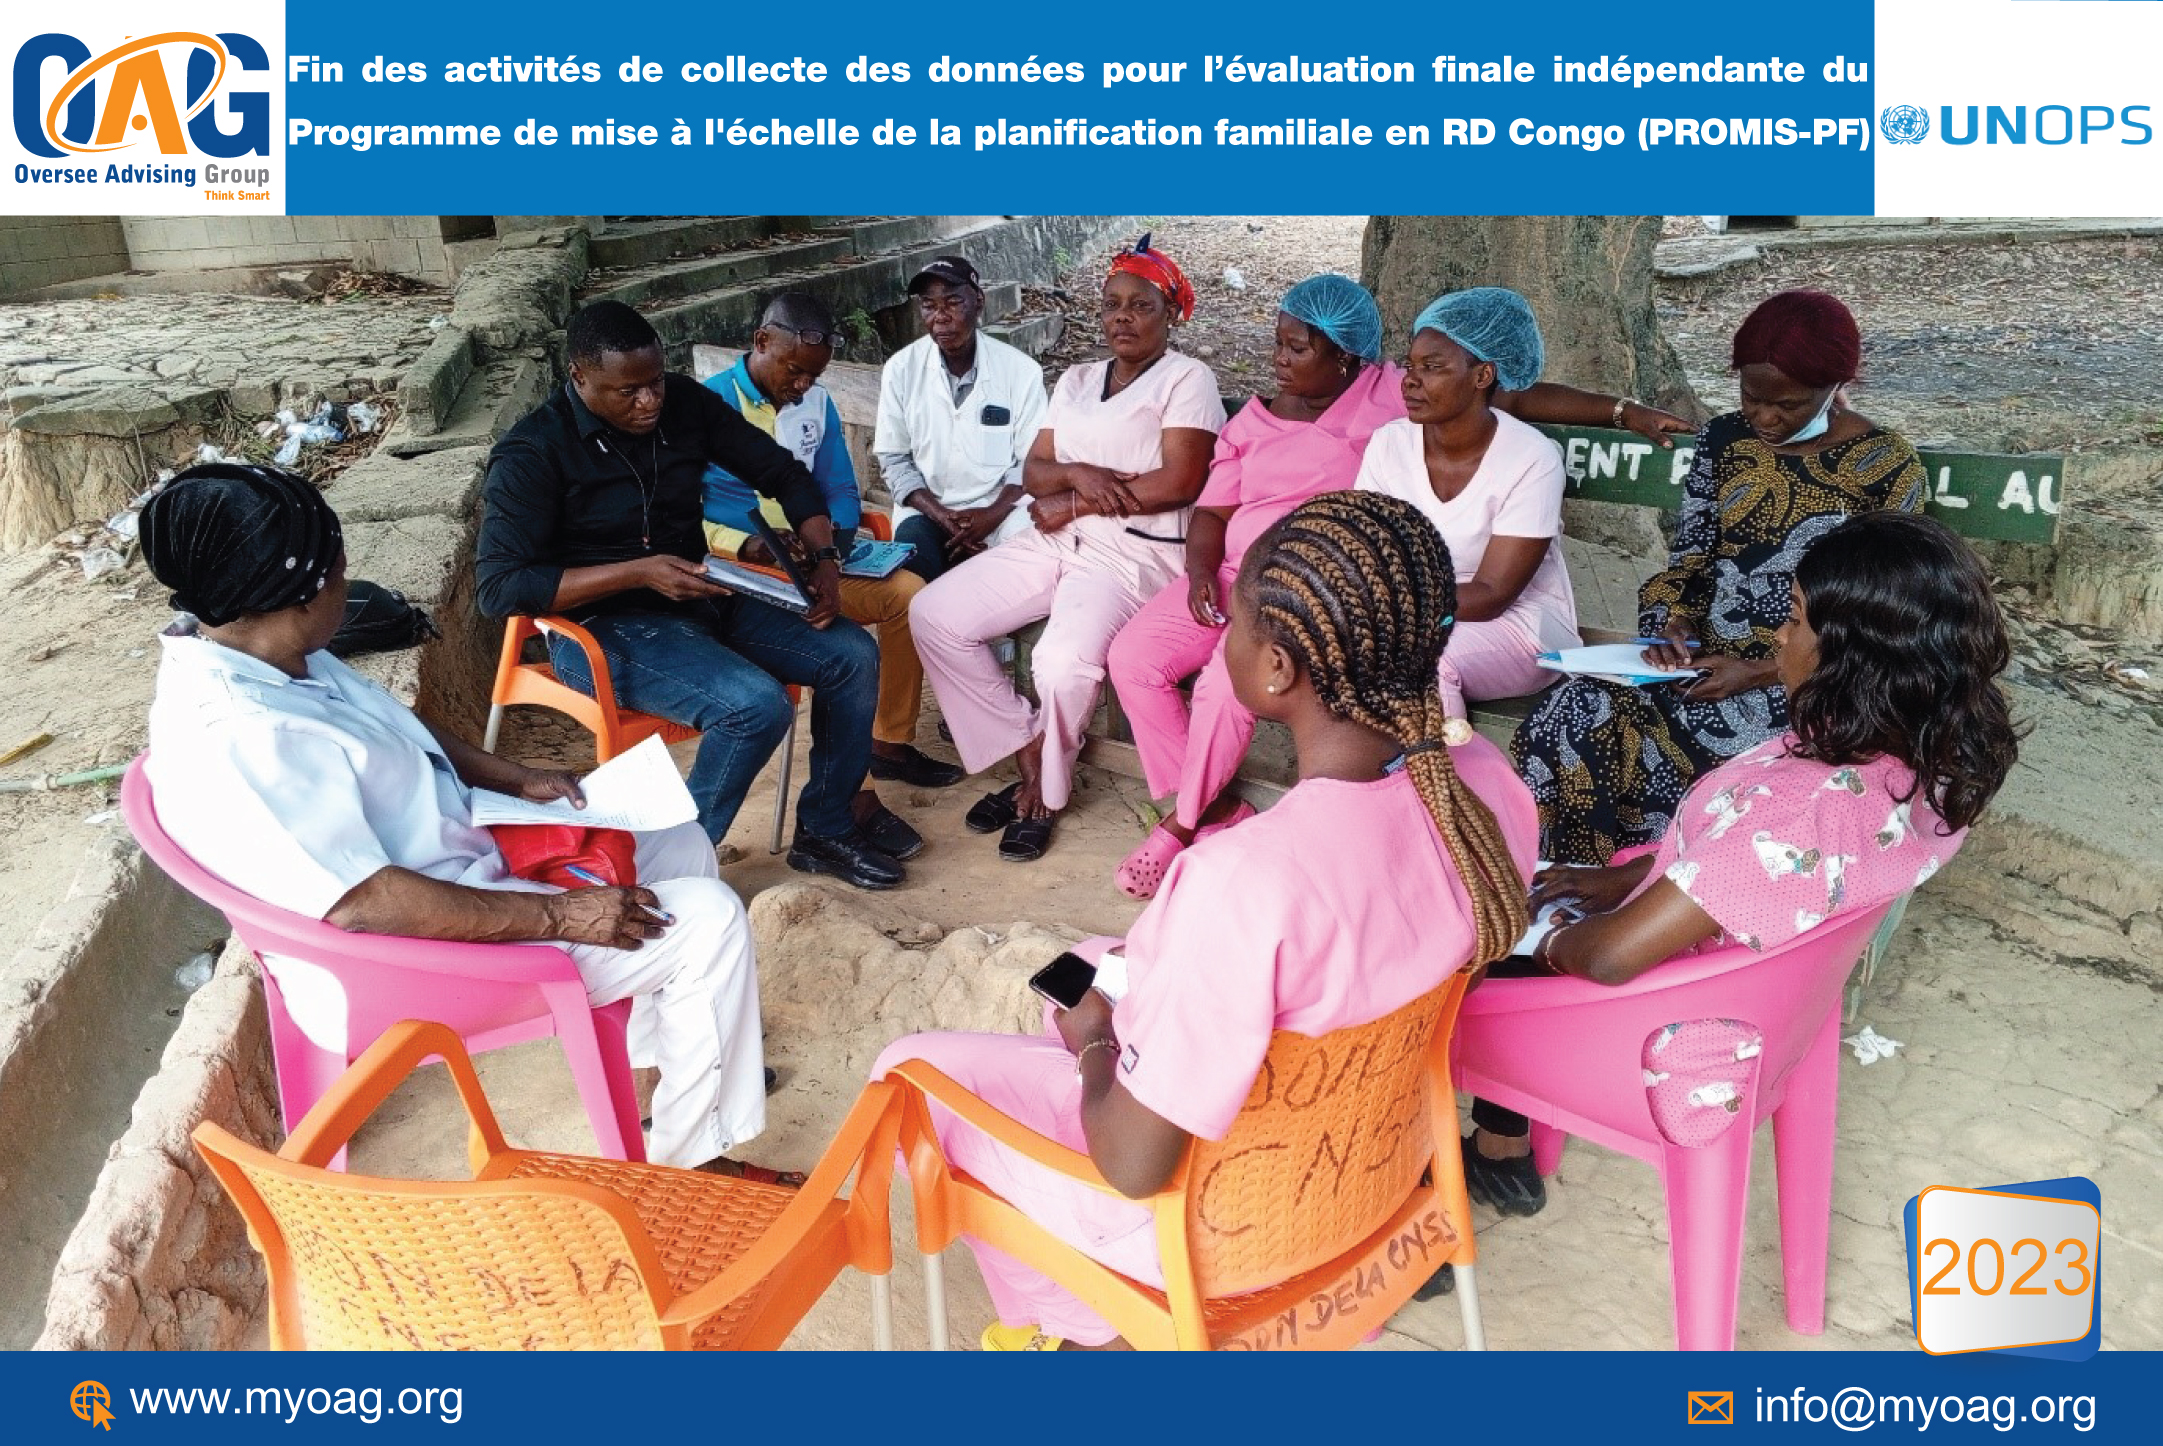 Fin des activités des données pour l'évaluation finale indépendante du programme de mise à l'échelle de la planification familiale en RD Congo (PROMIS-PF)